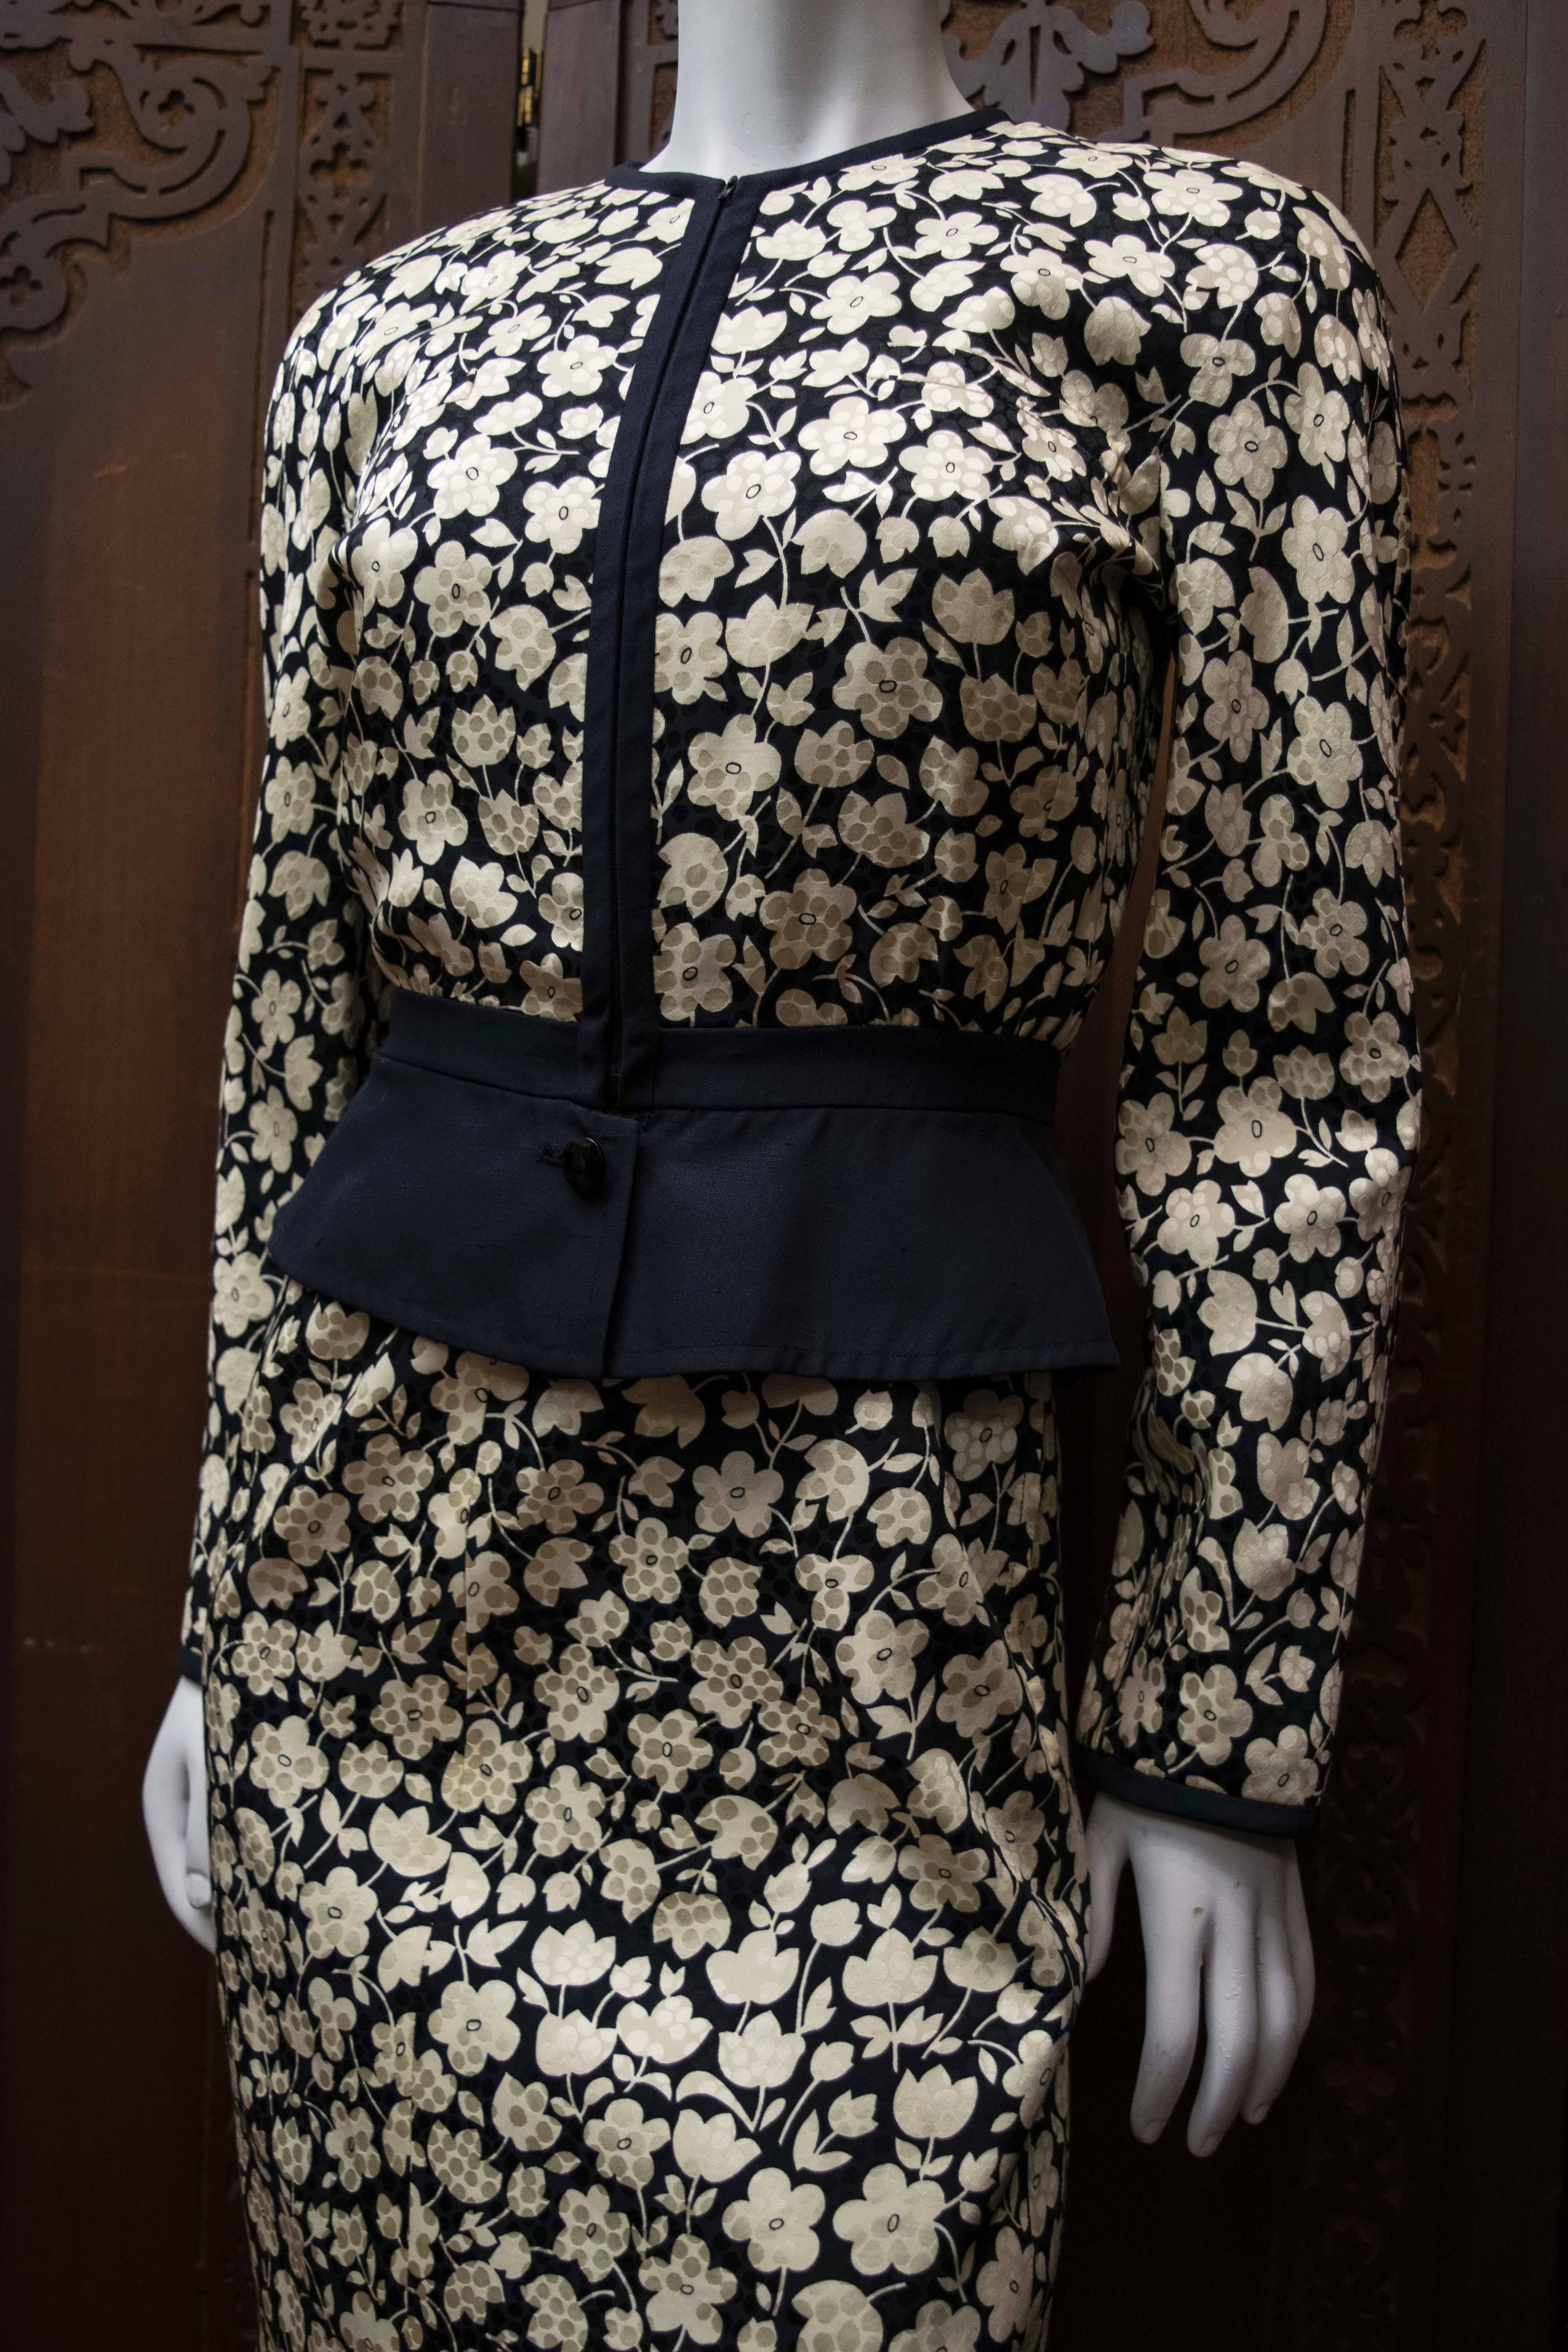 robe et veste à fleurs des années 1980 de Valentino

Magnifique robe et veste à fleurs noires et crème. Chaque pièce est merveilleuse en soi, et formidable en tant qu'ensemble. 

B 34
W 28
H 40
L 32